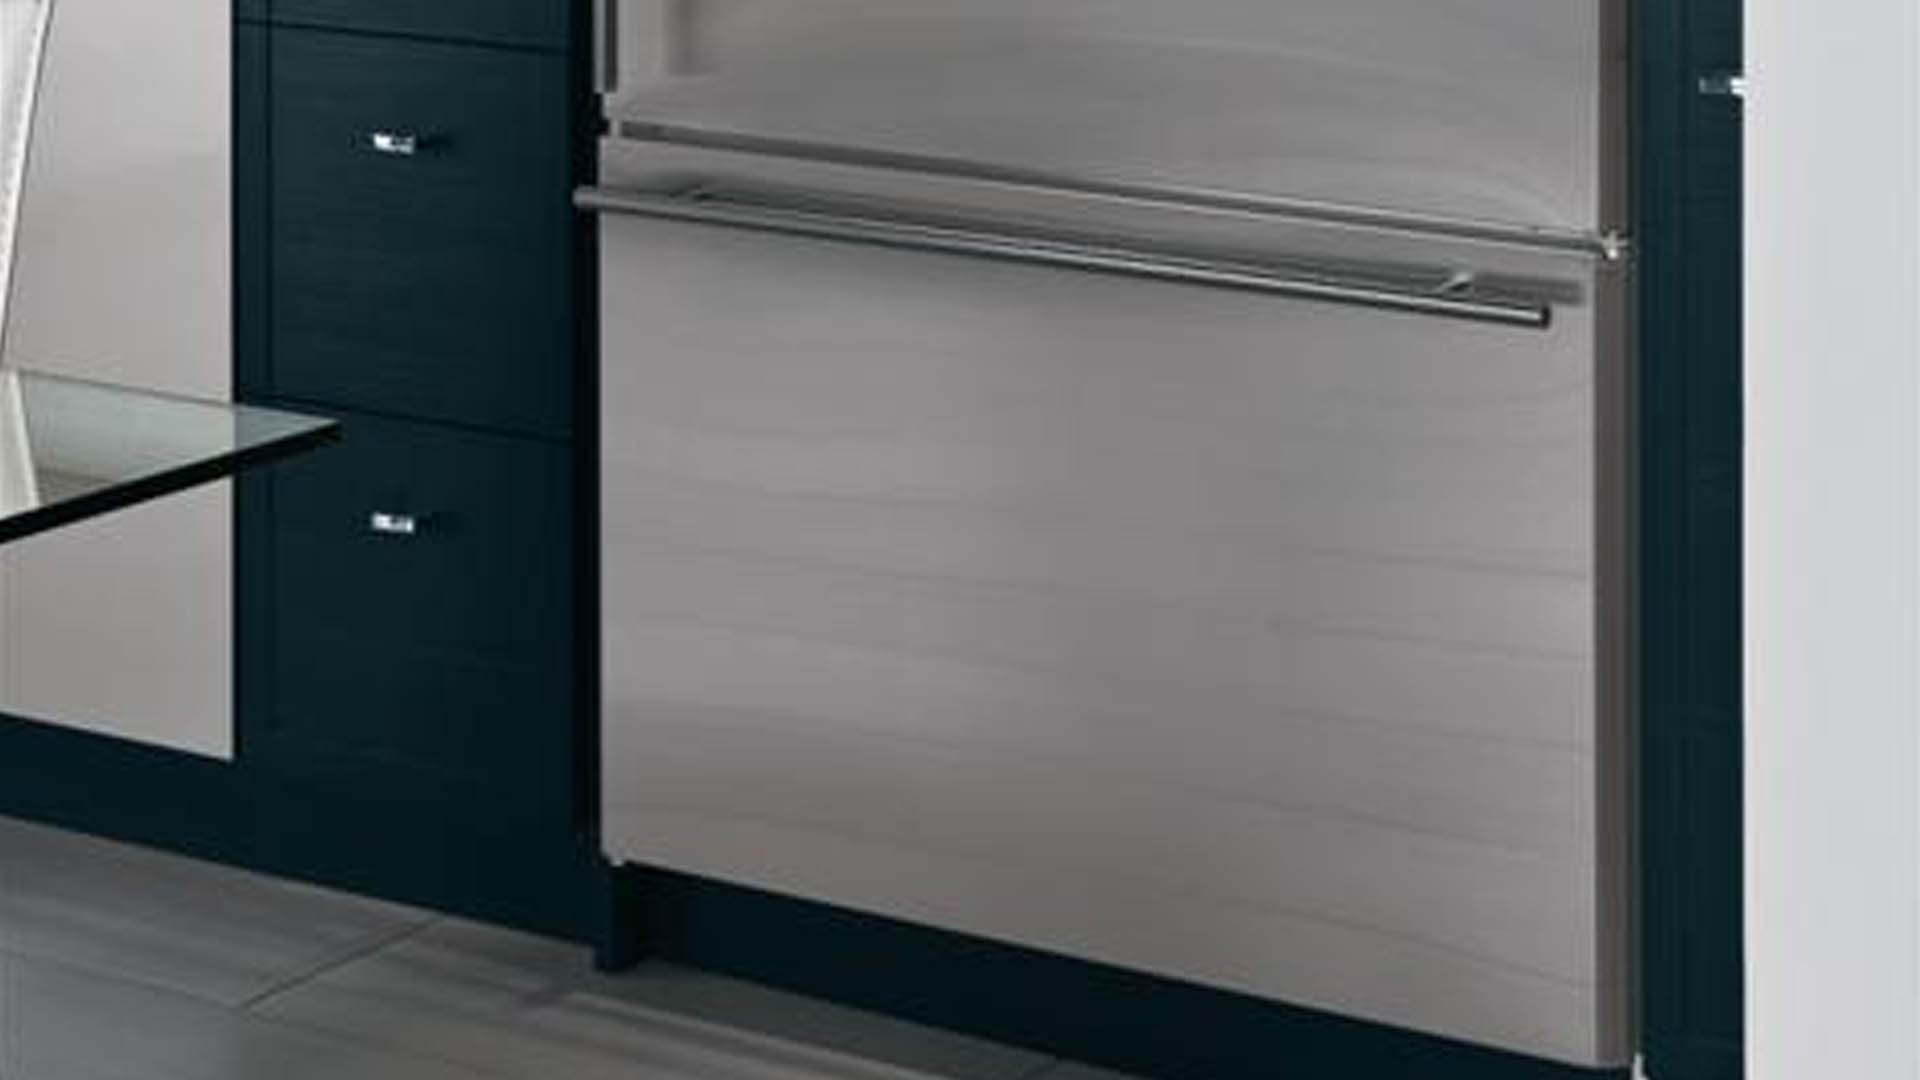 Ge Monogram Bottom Freezer Refrigerator Repair Service | GE Monogram Inc Repair